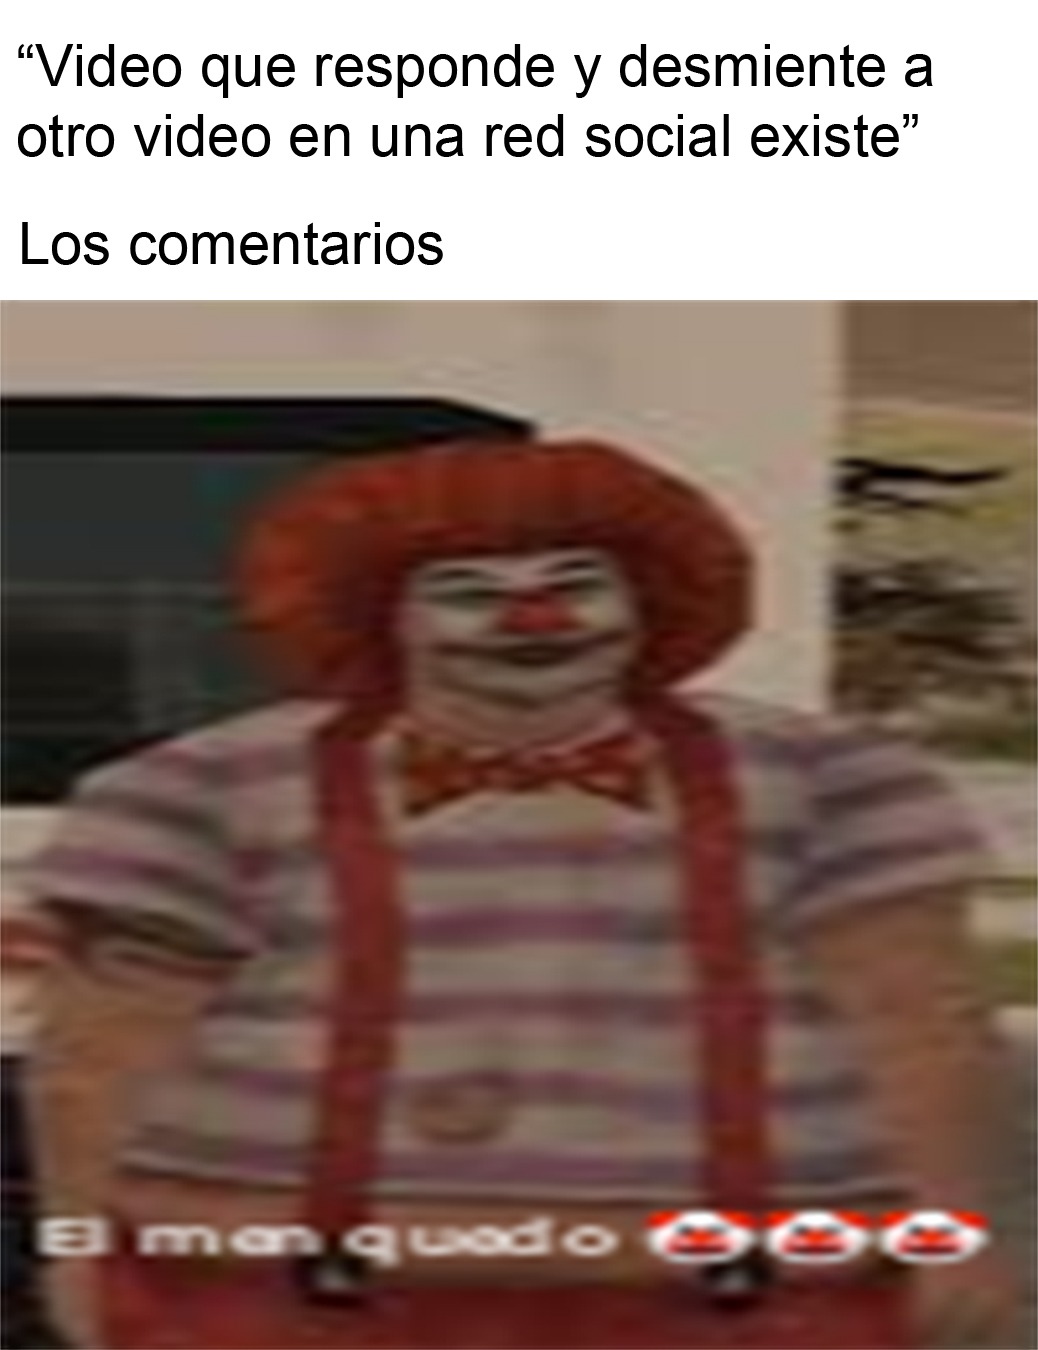 Clown el payaso - meme